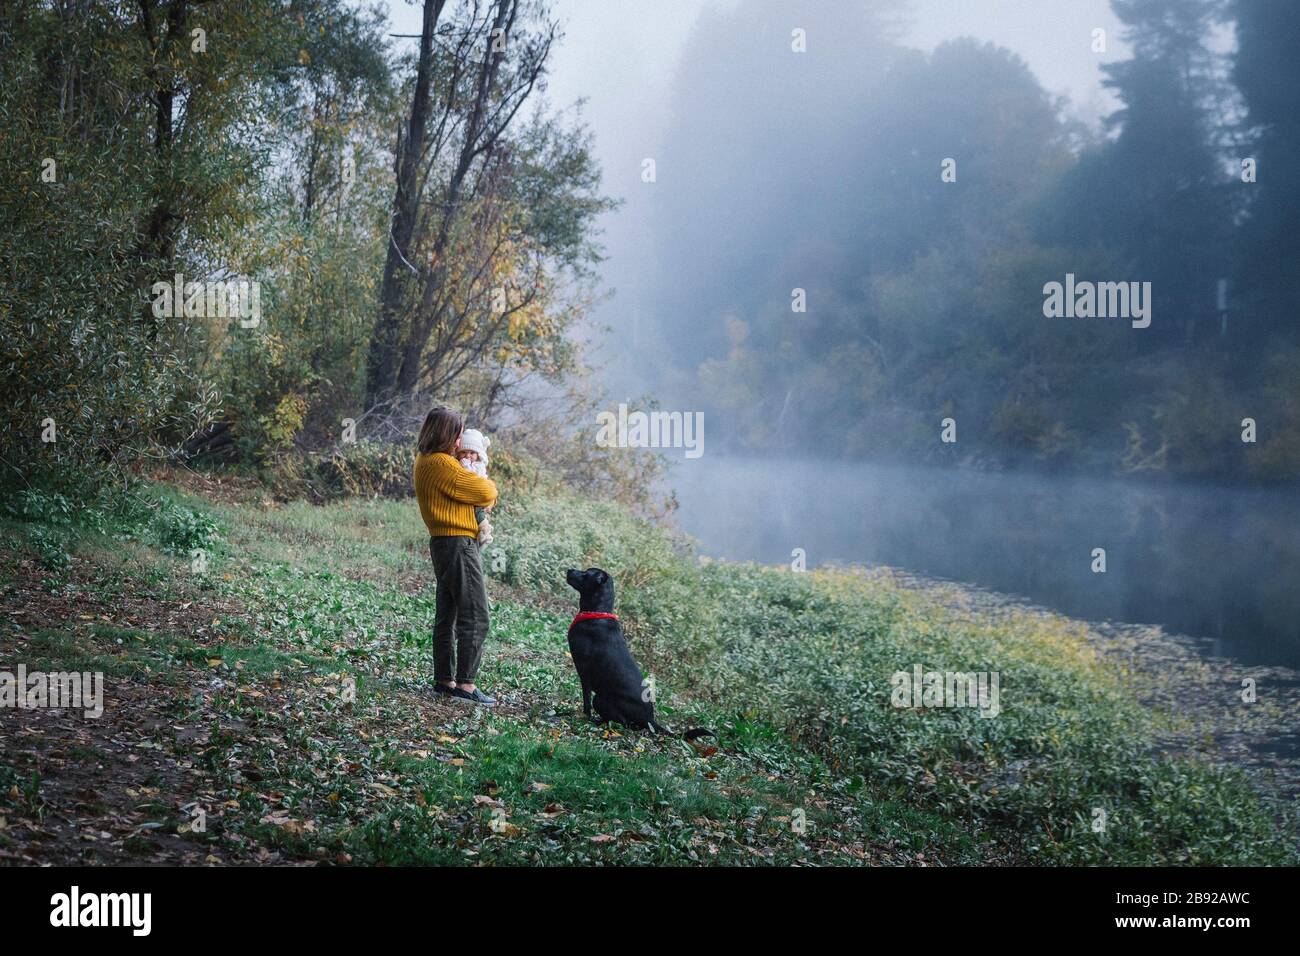 Une femme tient un bébé et regarde un chien près d'une rivière Banque D'Images